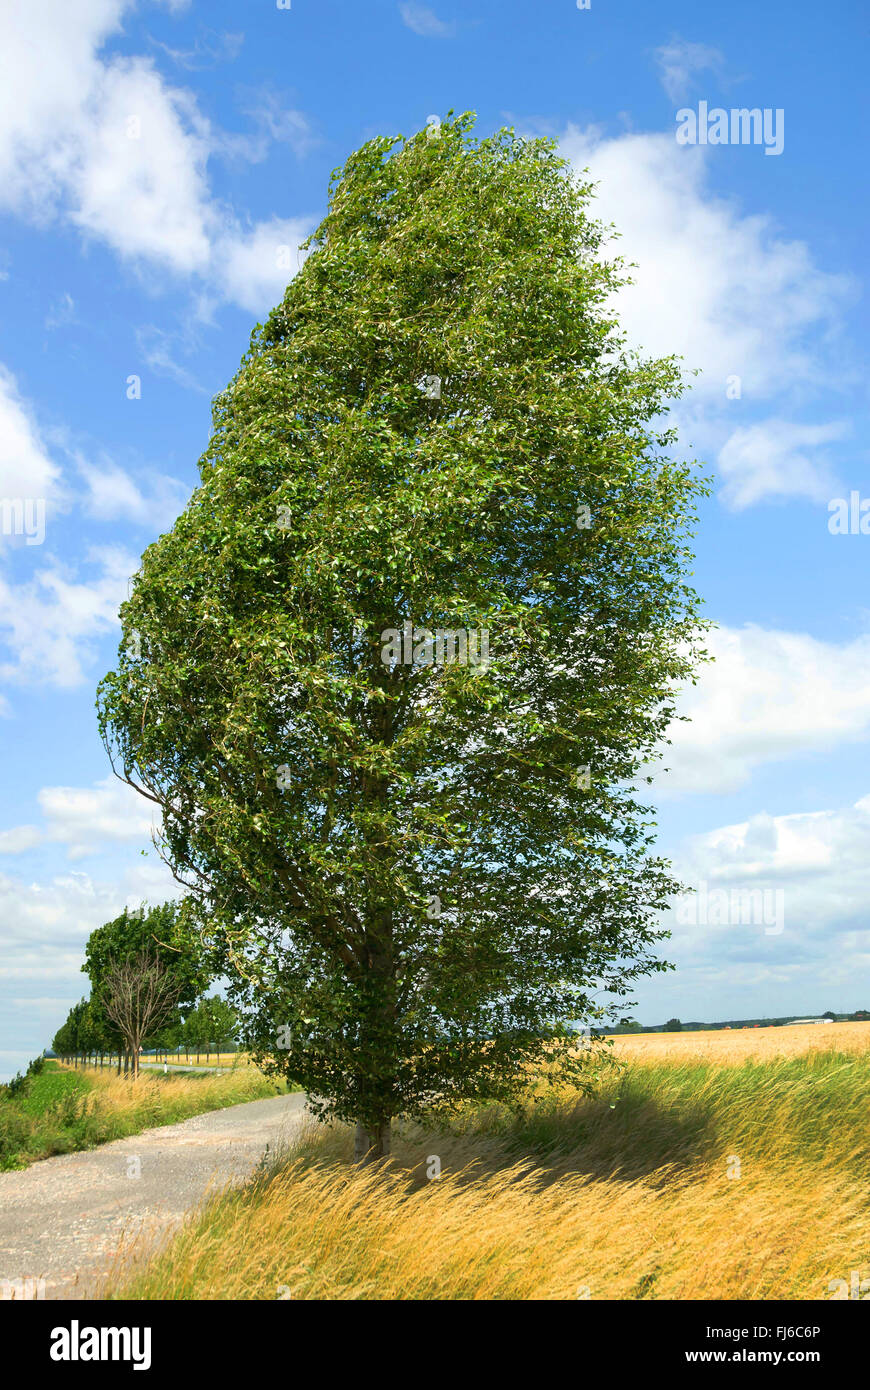 Colonnes de peuplier (Populus simonii 'Fastigiata', Populus simonii fastigiata), seul arbre, Allemagne Banque D'Images